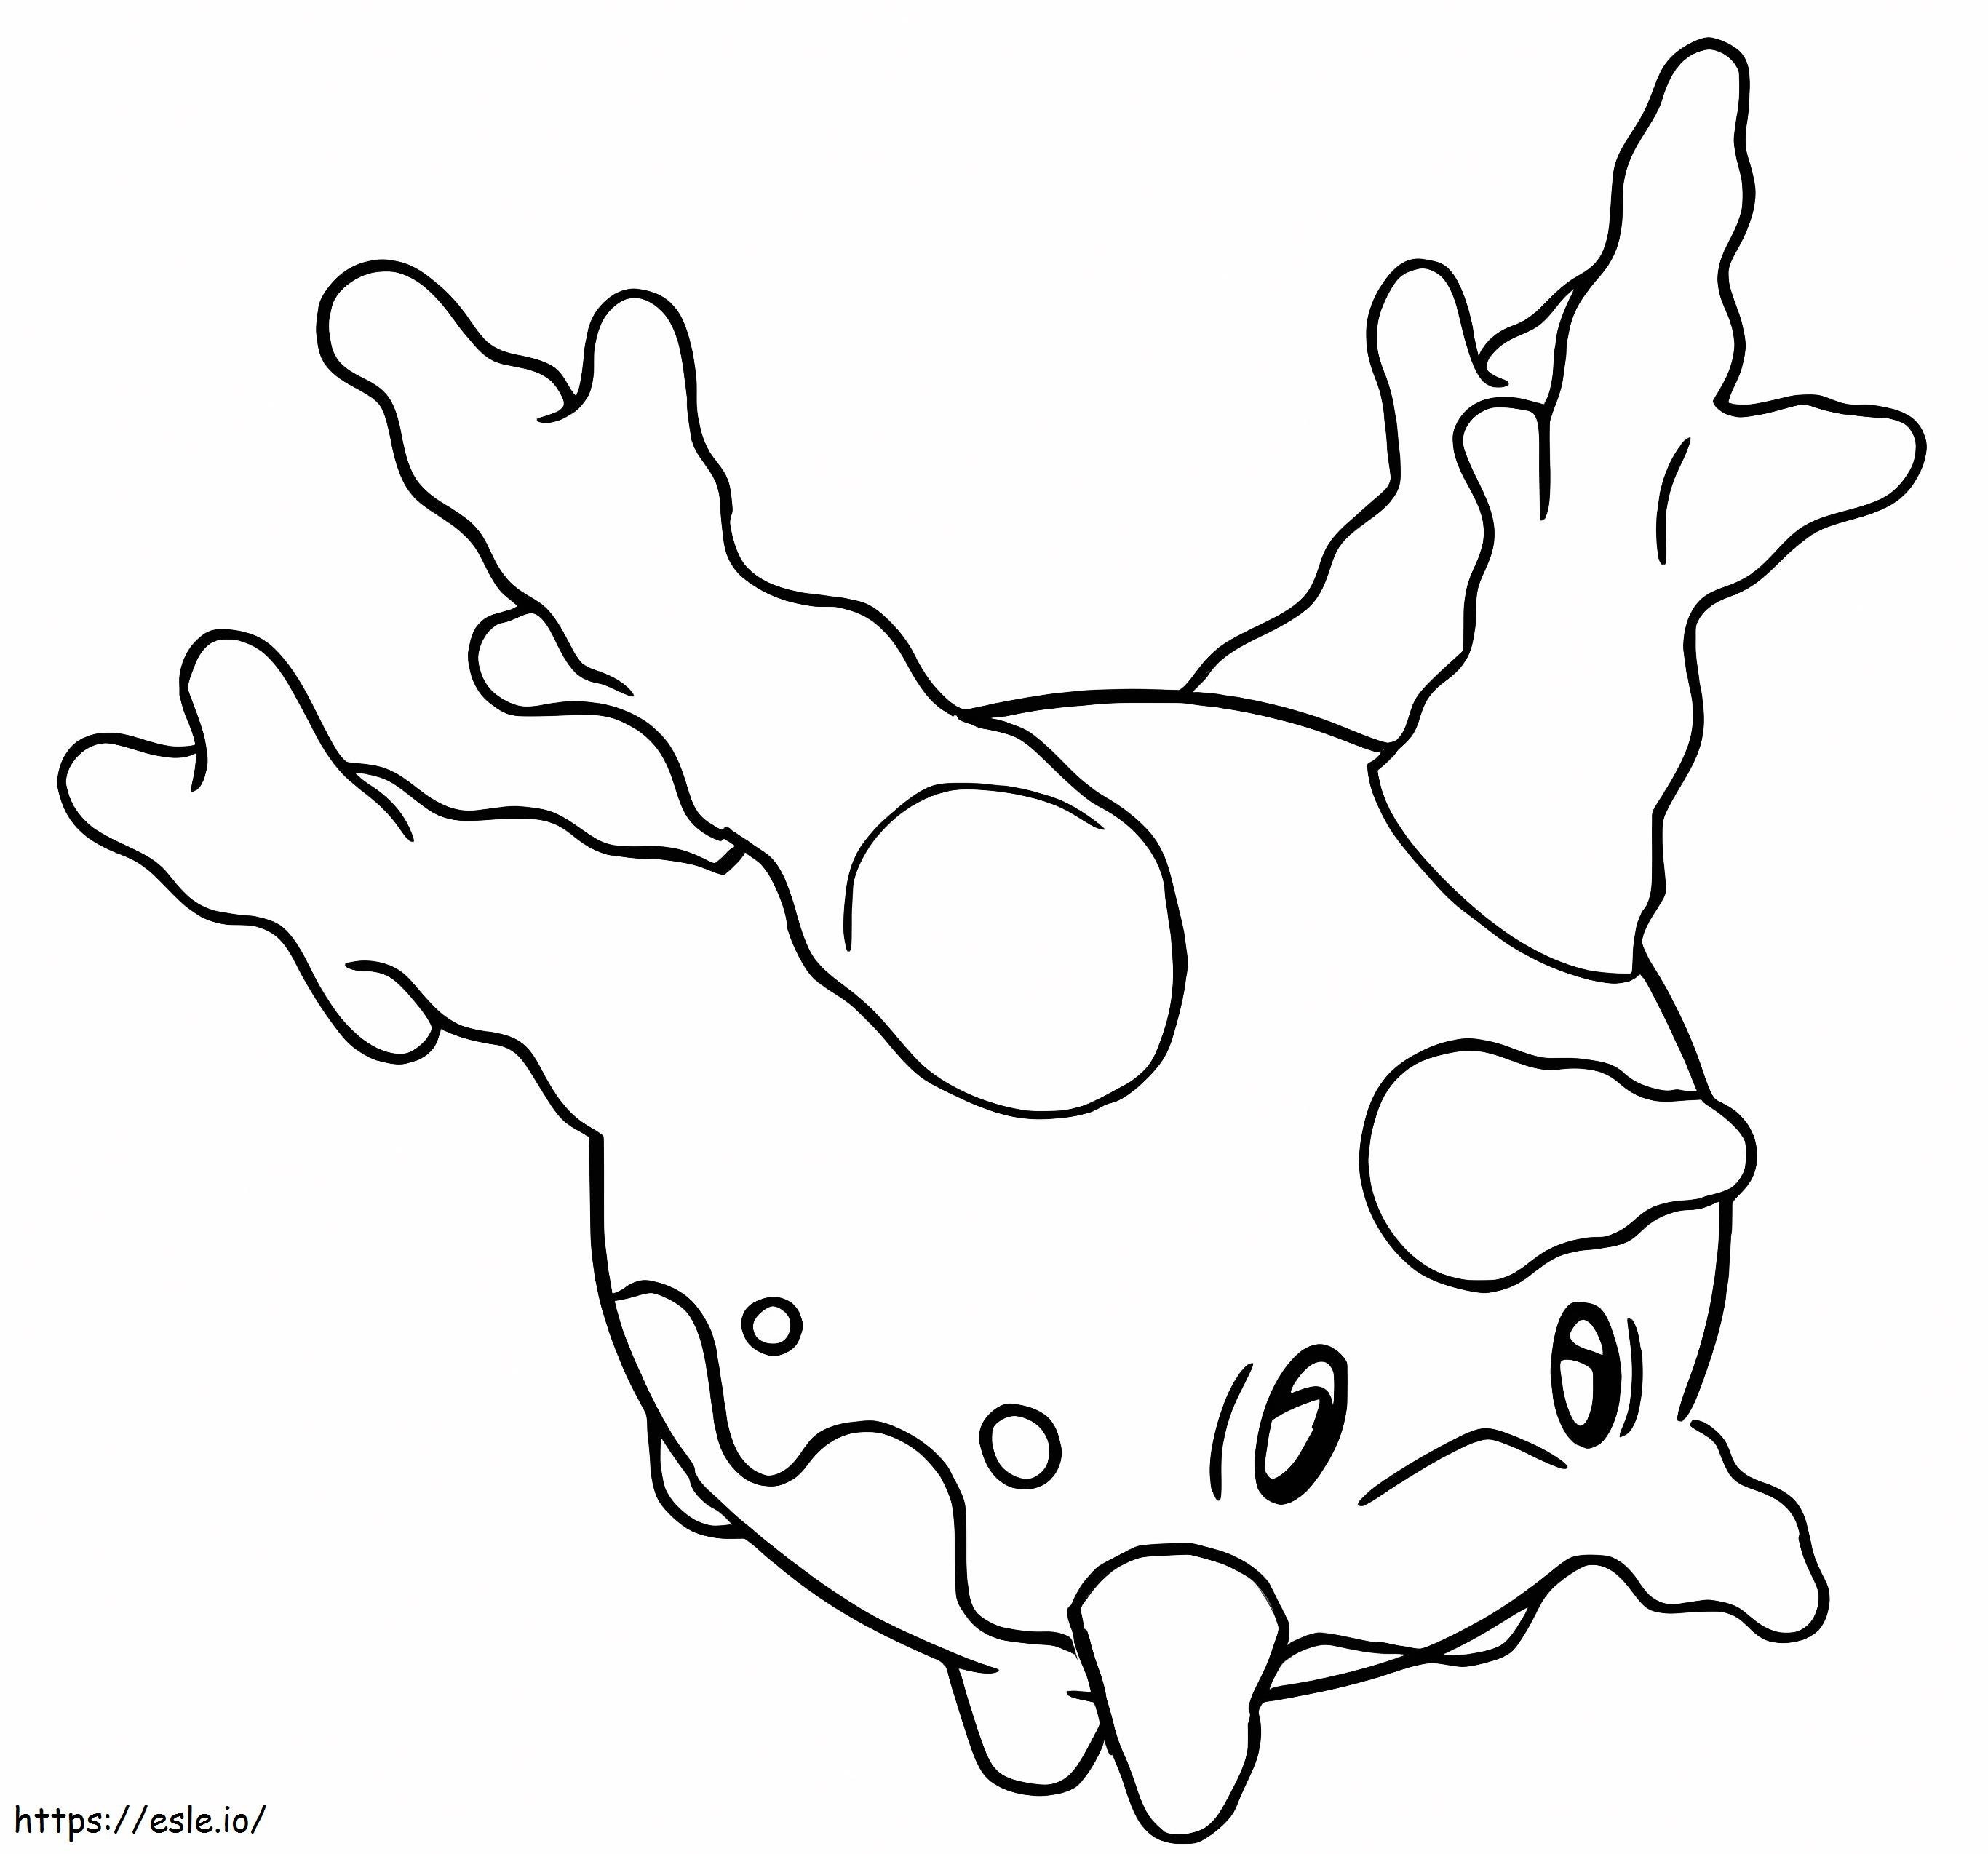 Coloriage Pokémon Corsola à imprimer dessin